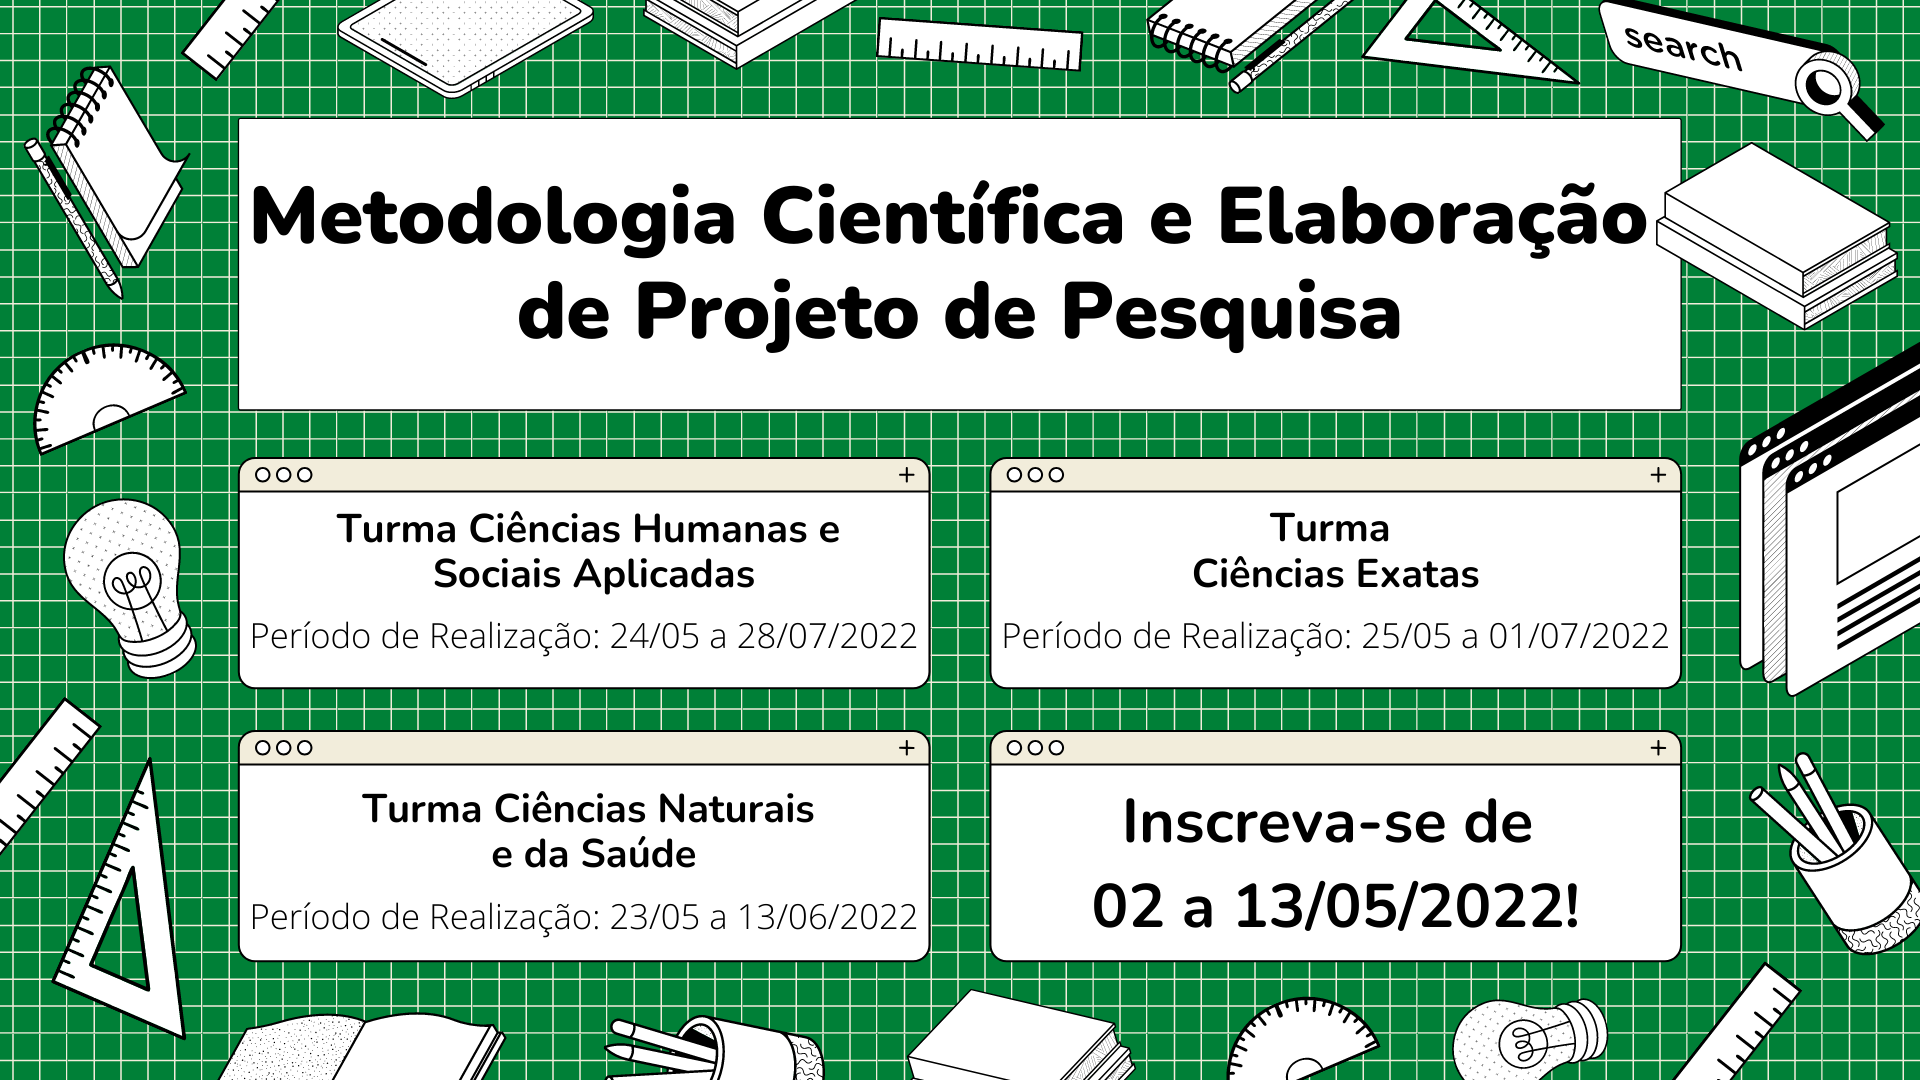 Metodologia_Científica_e_Elaboração_de_Projeto_de_Pesquisa_2022.png